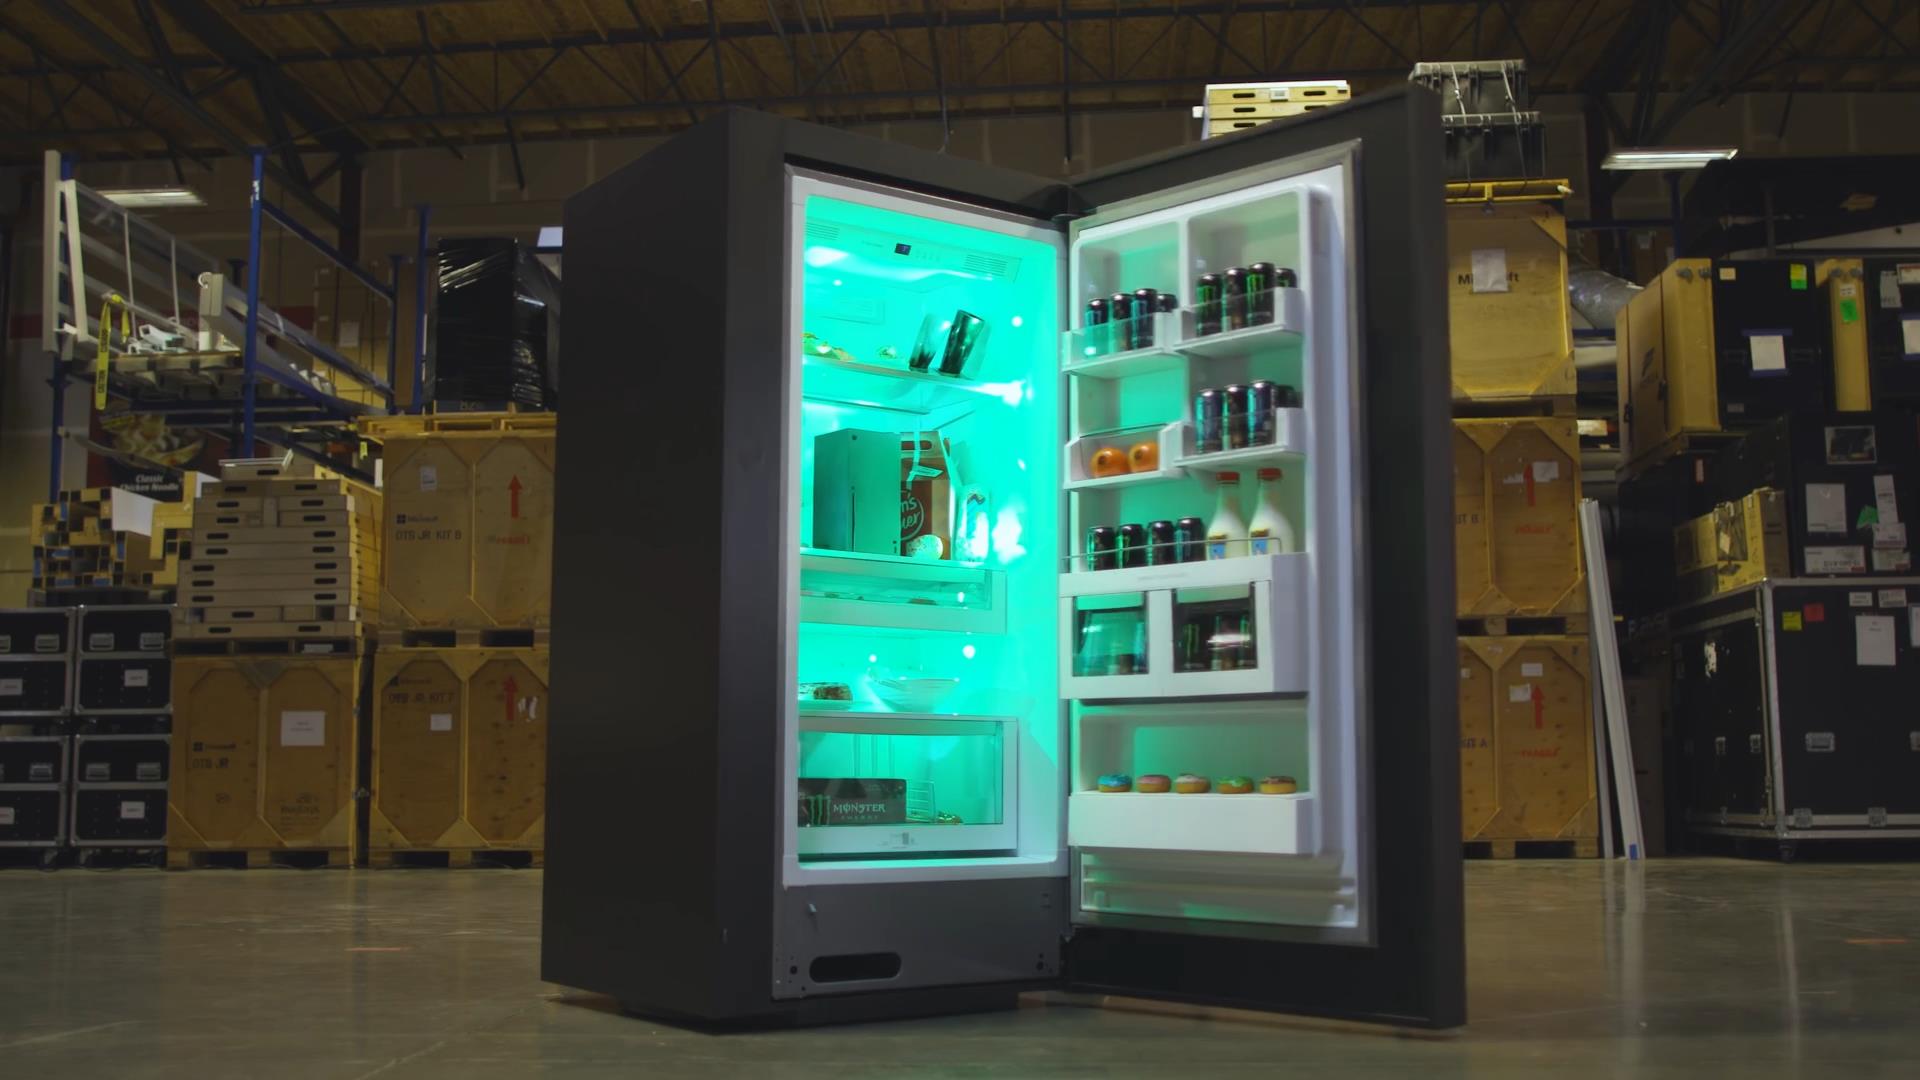 XSX冰箱宣传片公布 官方正在举办抽奖送冰箱活动